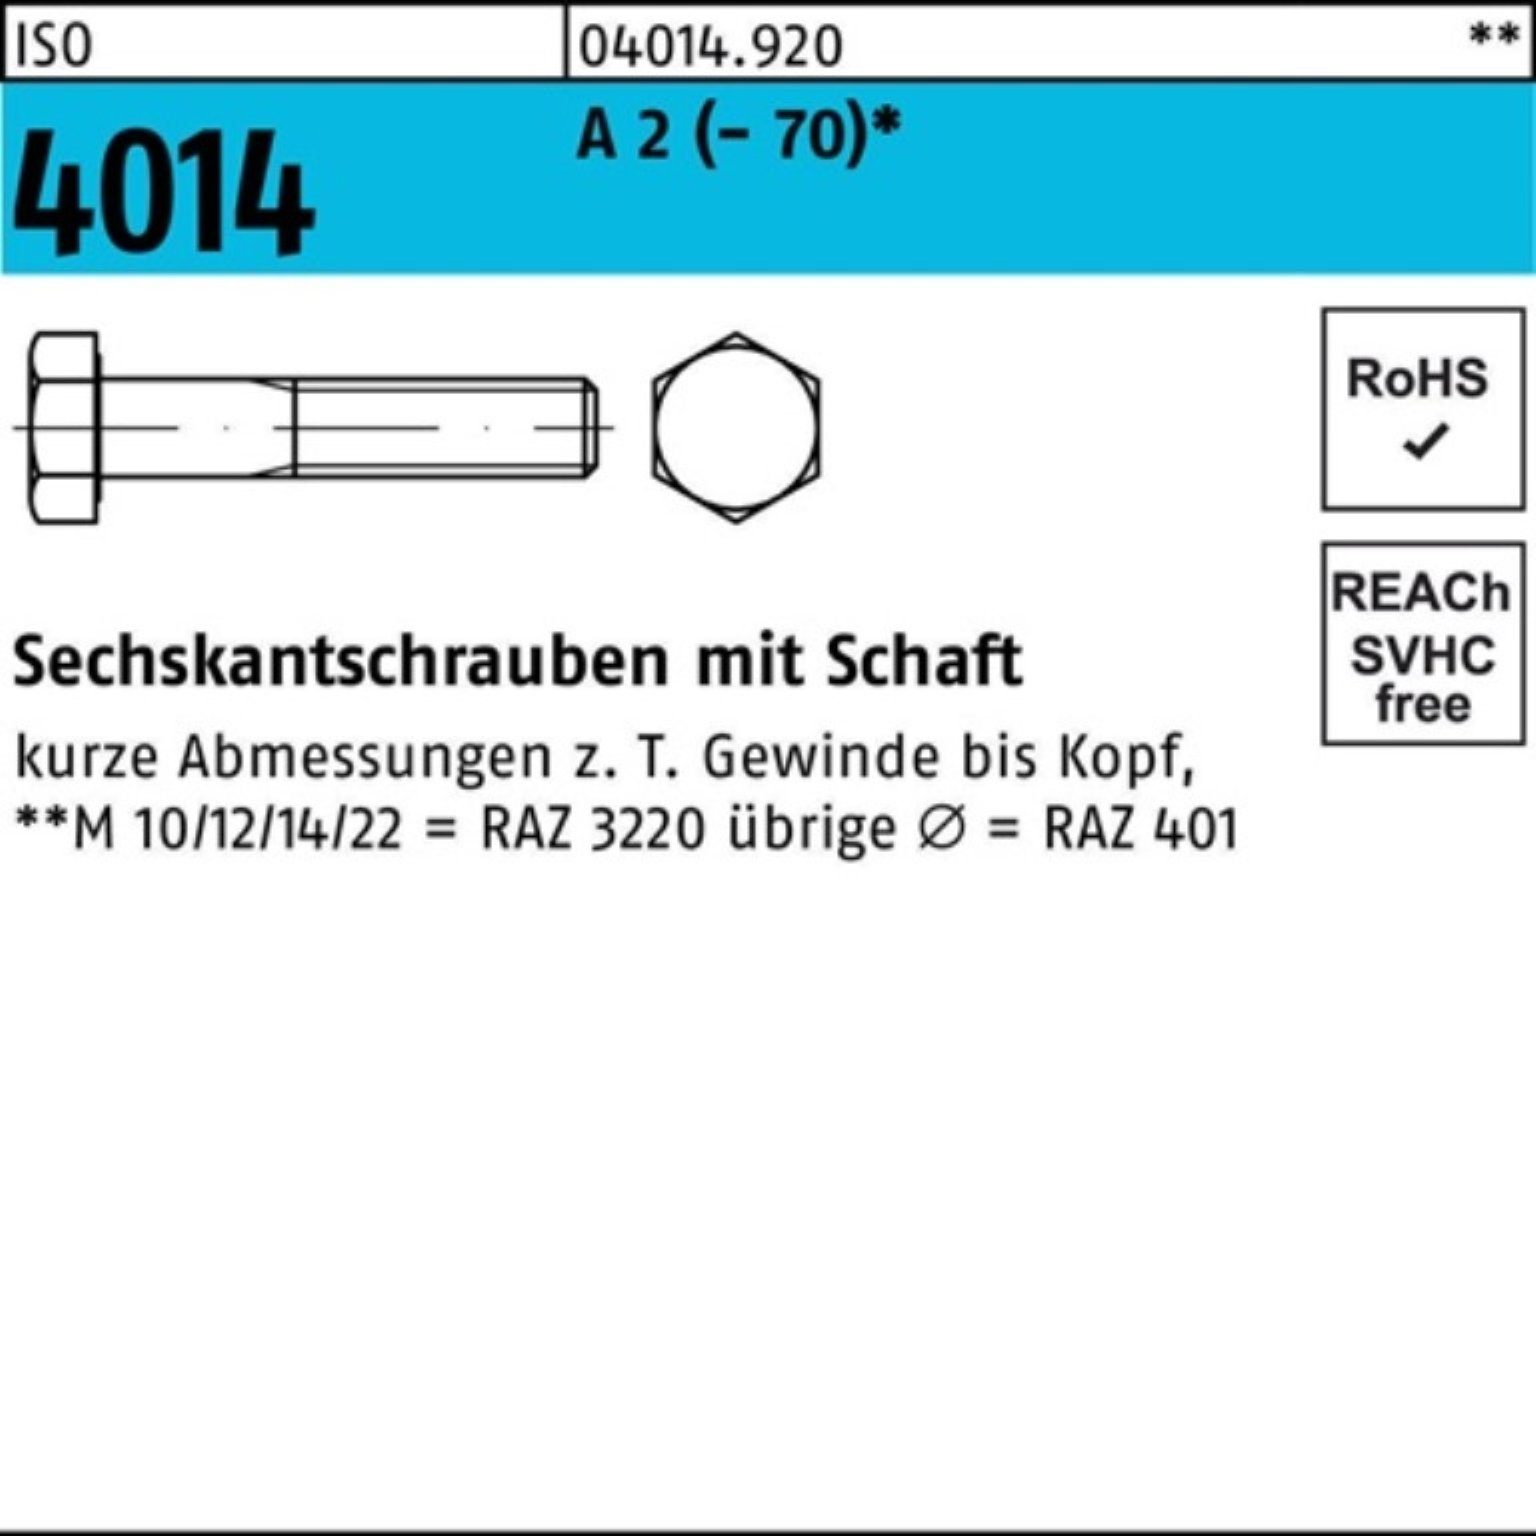 Schaft Sechskantschraube Bufab M24x 1 A 100er 2 Pack (70) ISO 4014 Sechskantschraube 80 Stü